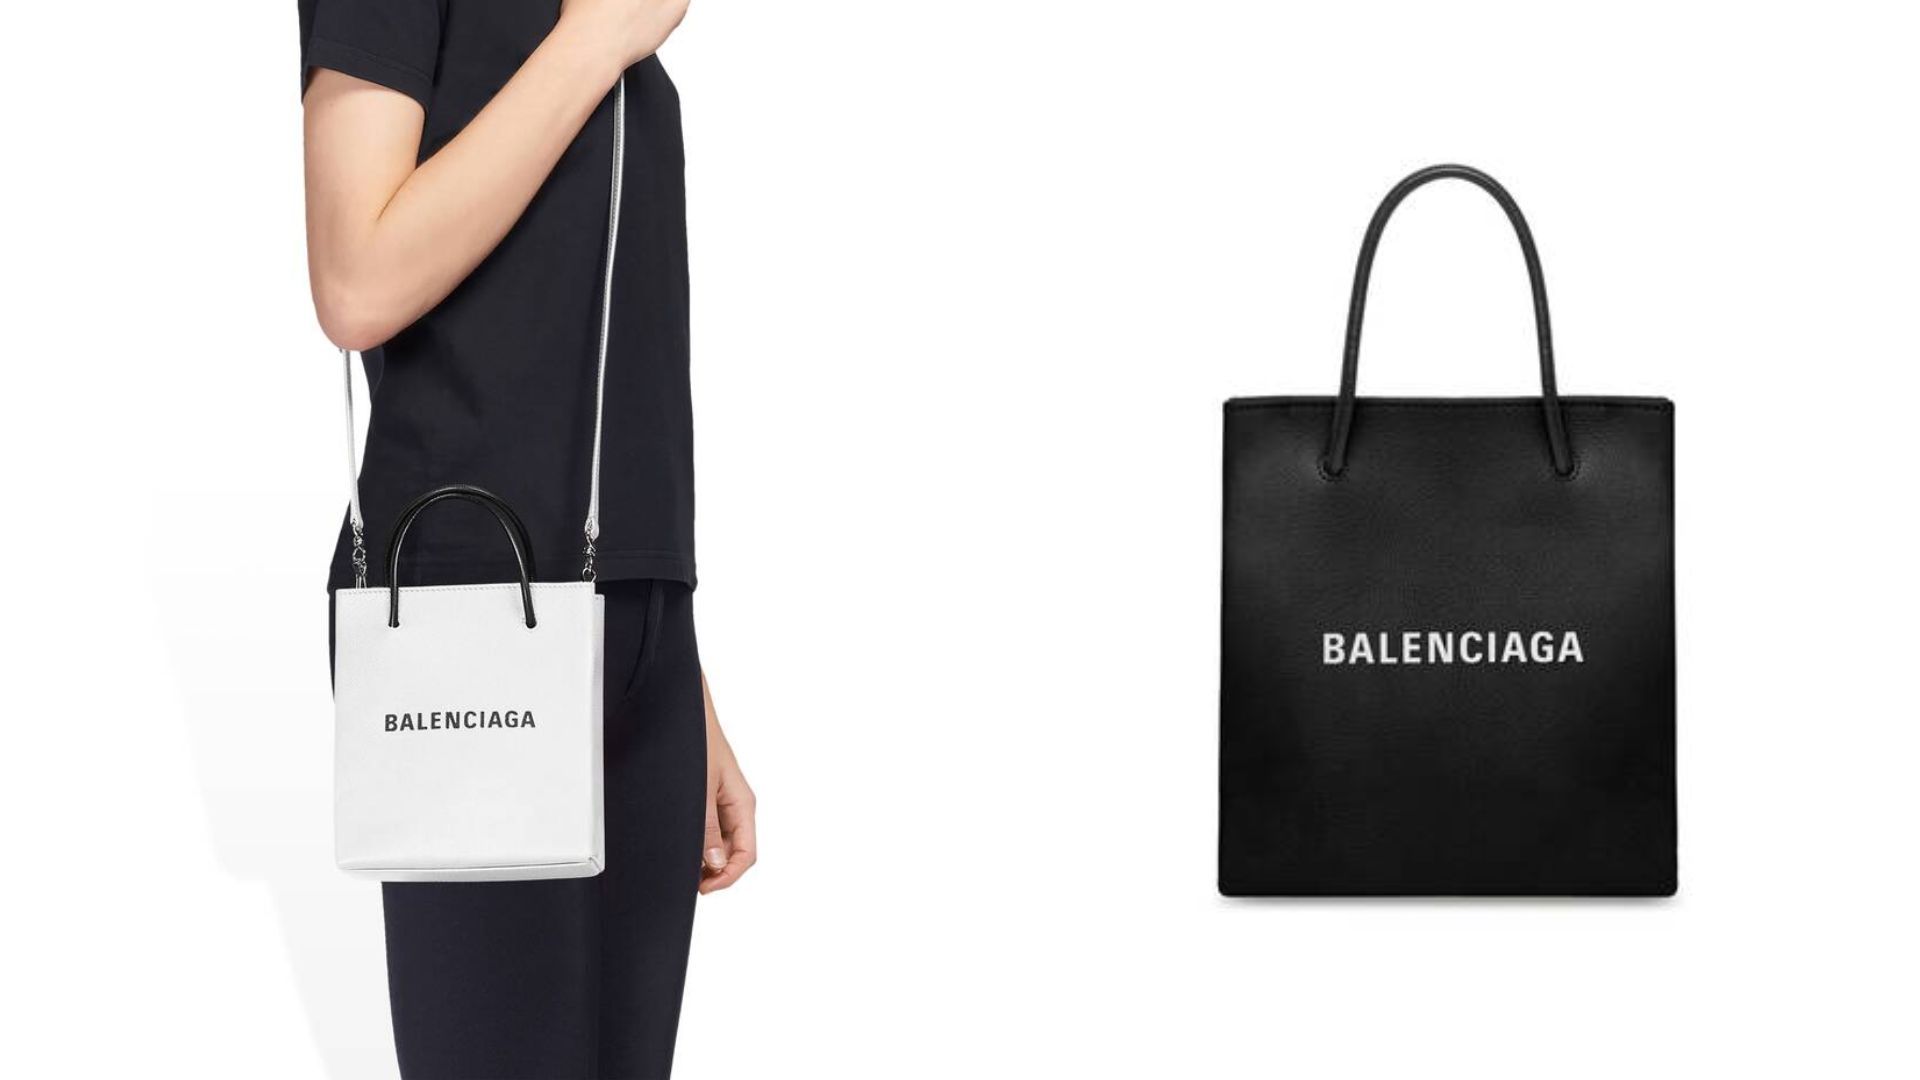 Balencia bag: Shopping tote